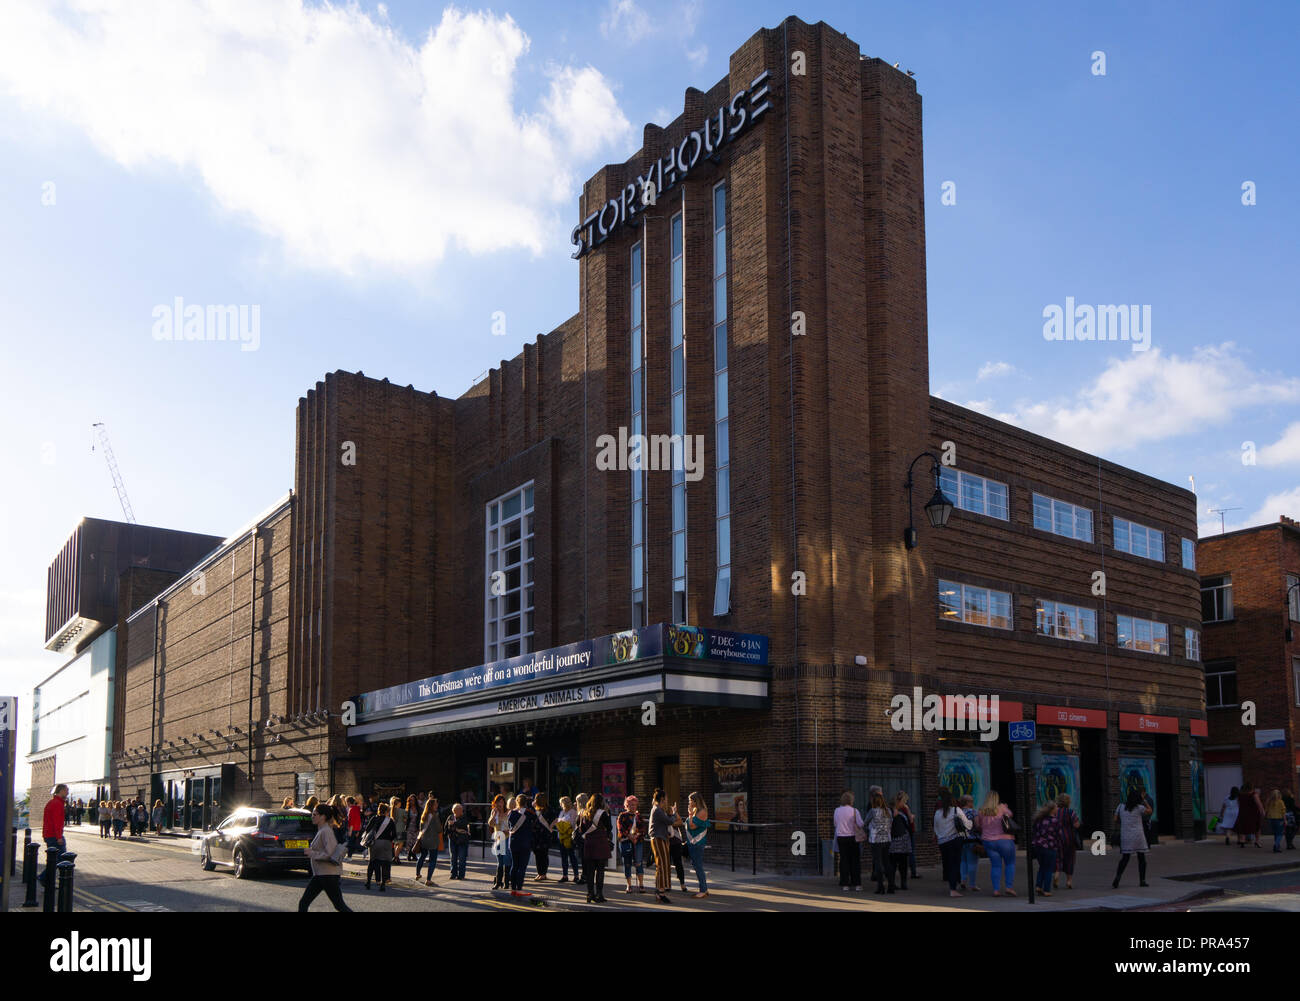 Storyhouse Cinema e luogo di divertimento, Chester, precedentemente il cinema Odeon. Immagine presa nel settembre 2018. Foto Stock